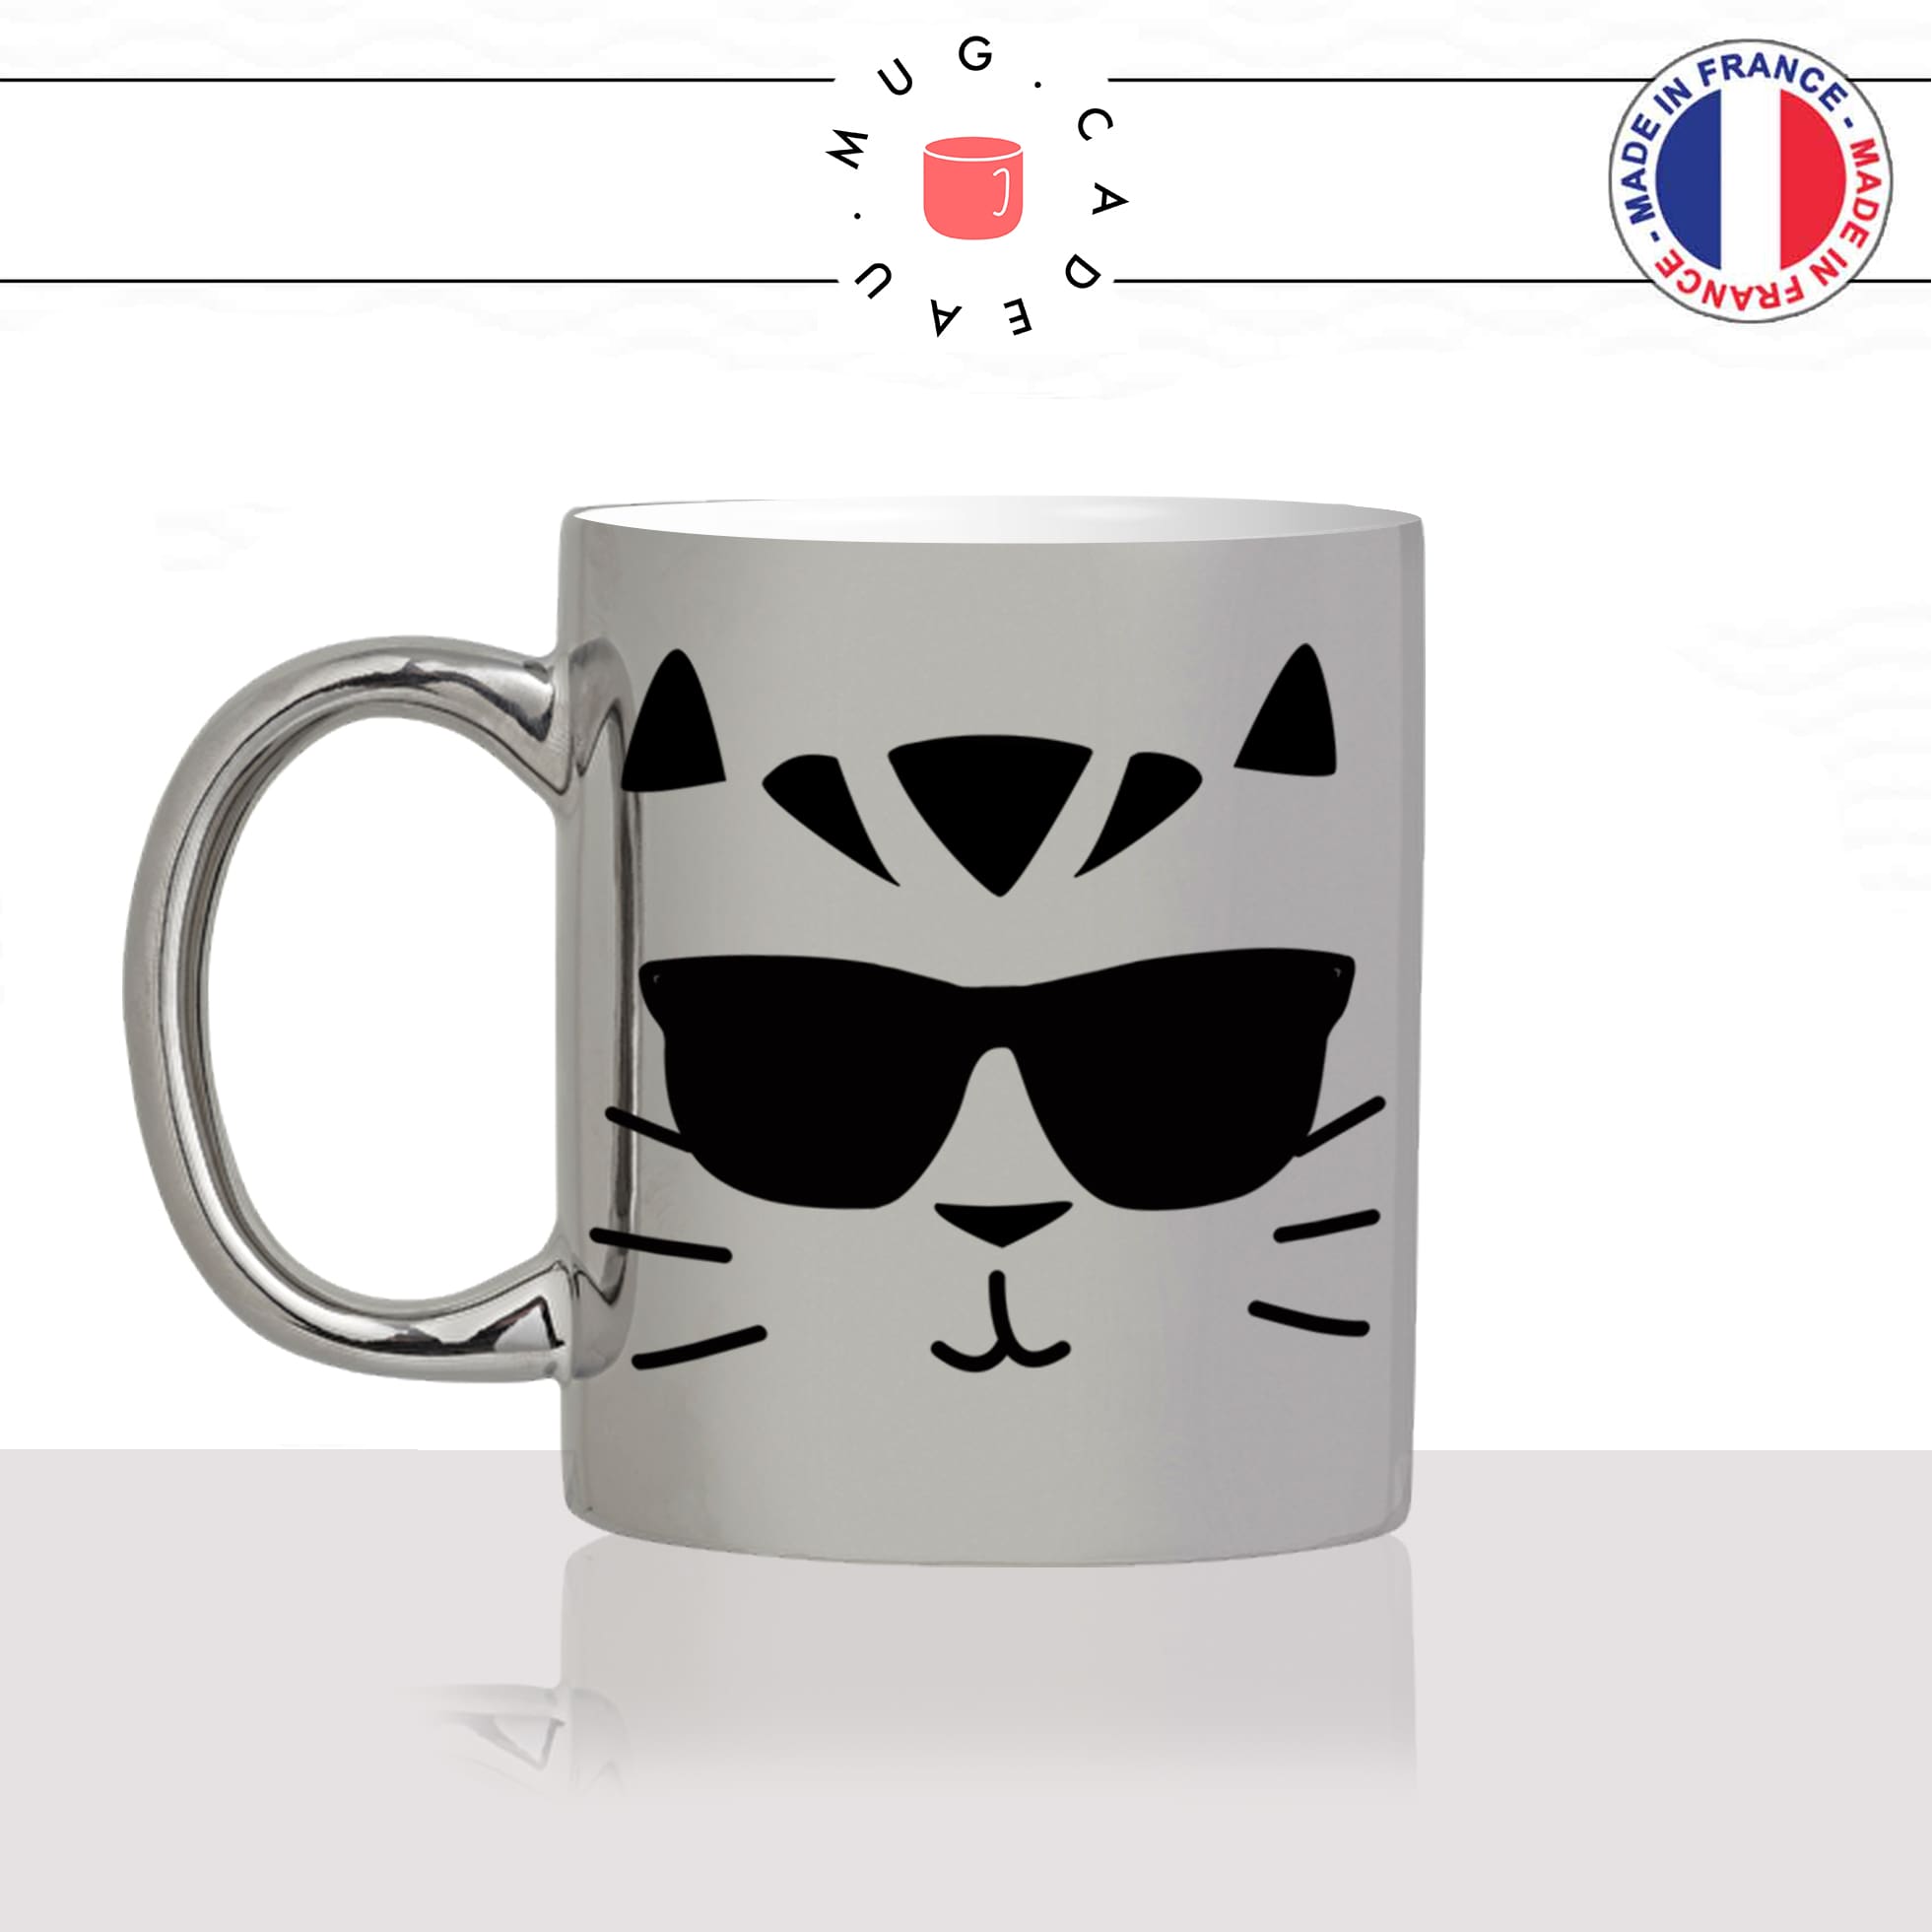 mug-tasse-argenté-silver-tete-de-chat-lunettes-de-soleil-cool-mignon-animal-chaton-noir-fun-café-thé-idée-cadeau-original-personnalisé-min